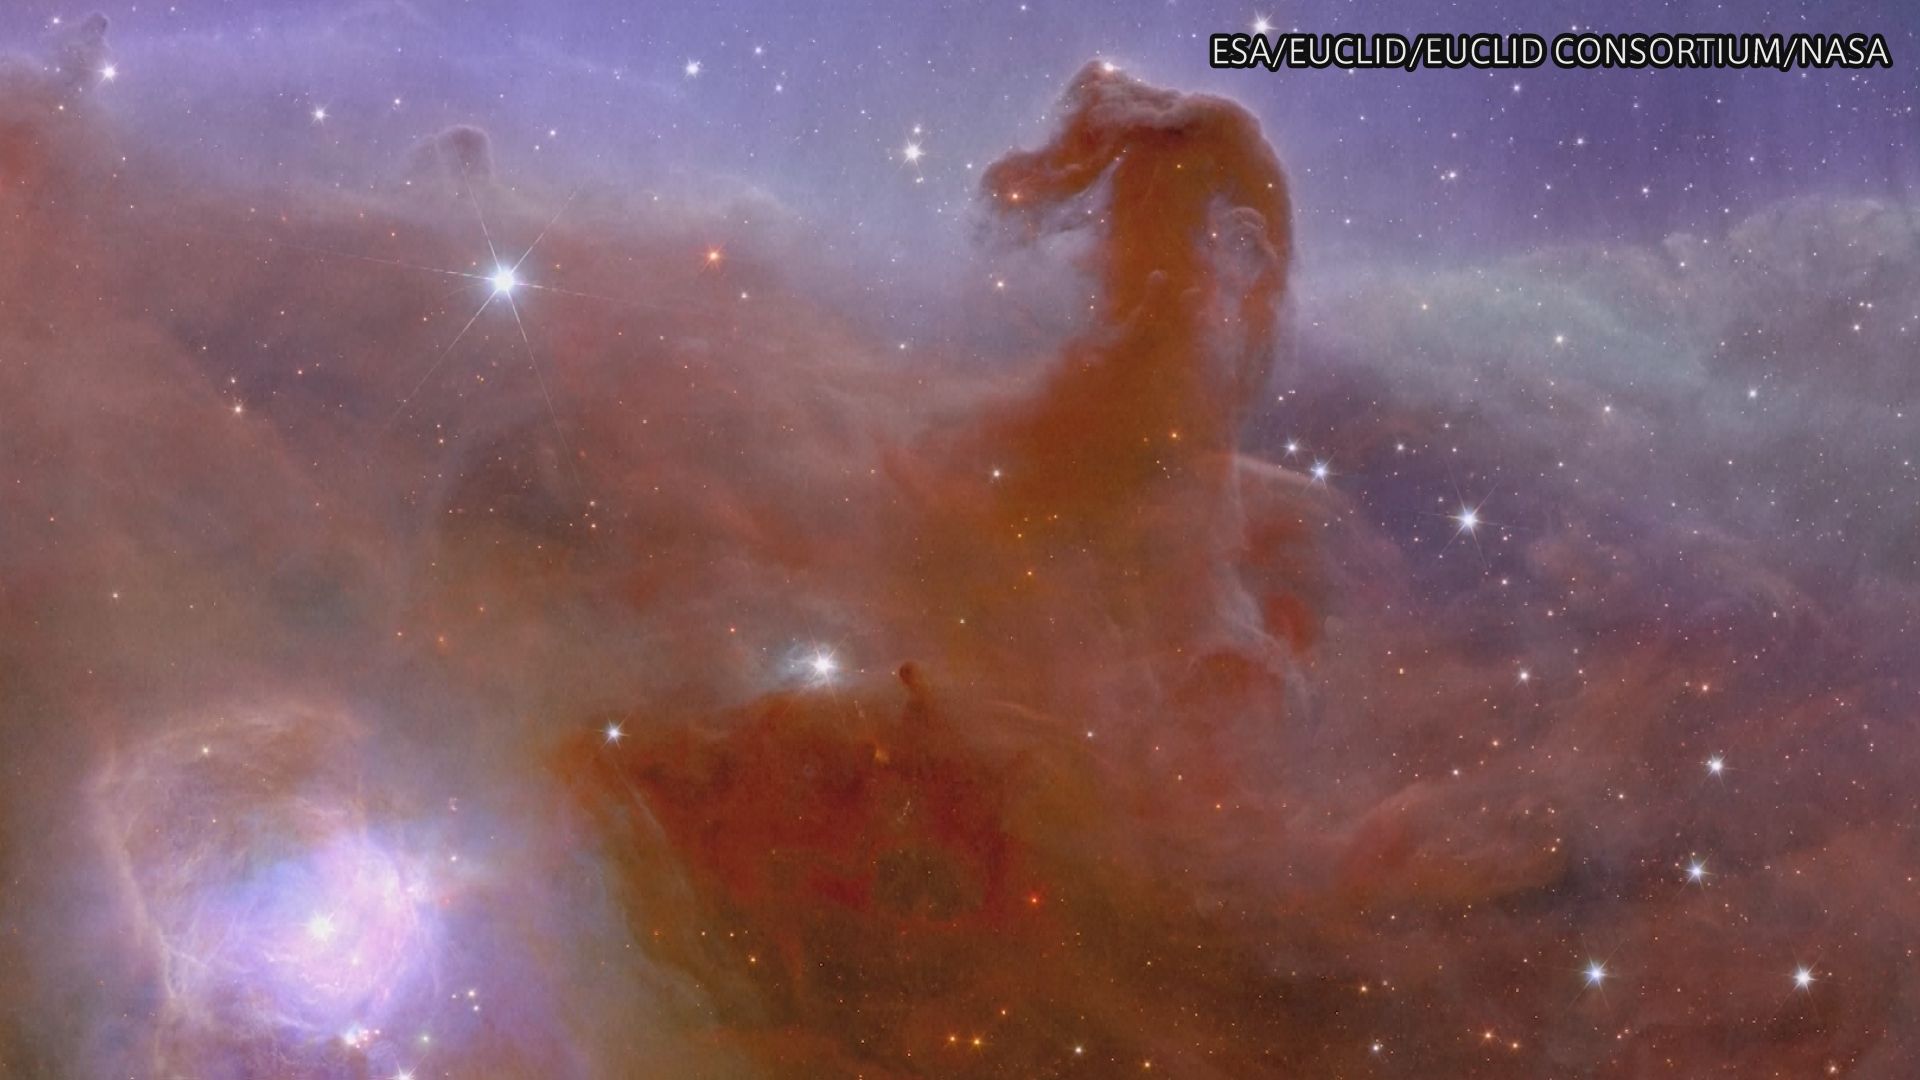 宇宙望遠鏡「ユークリッド」が撮影した星雲など画像公開 「馬頭星雲」など鮮明に